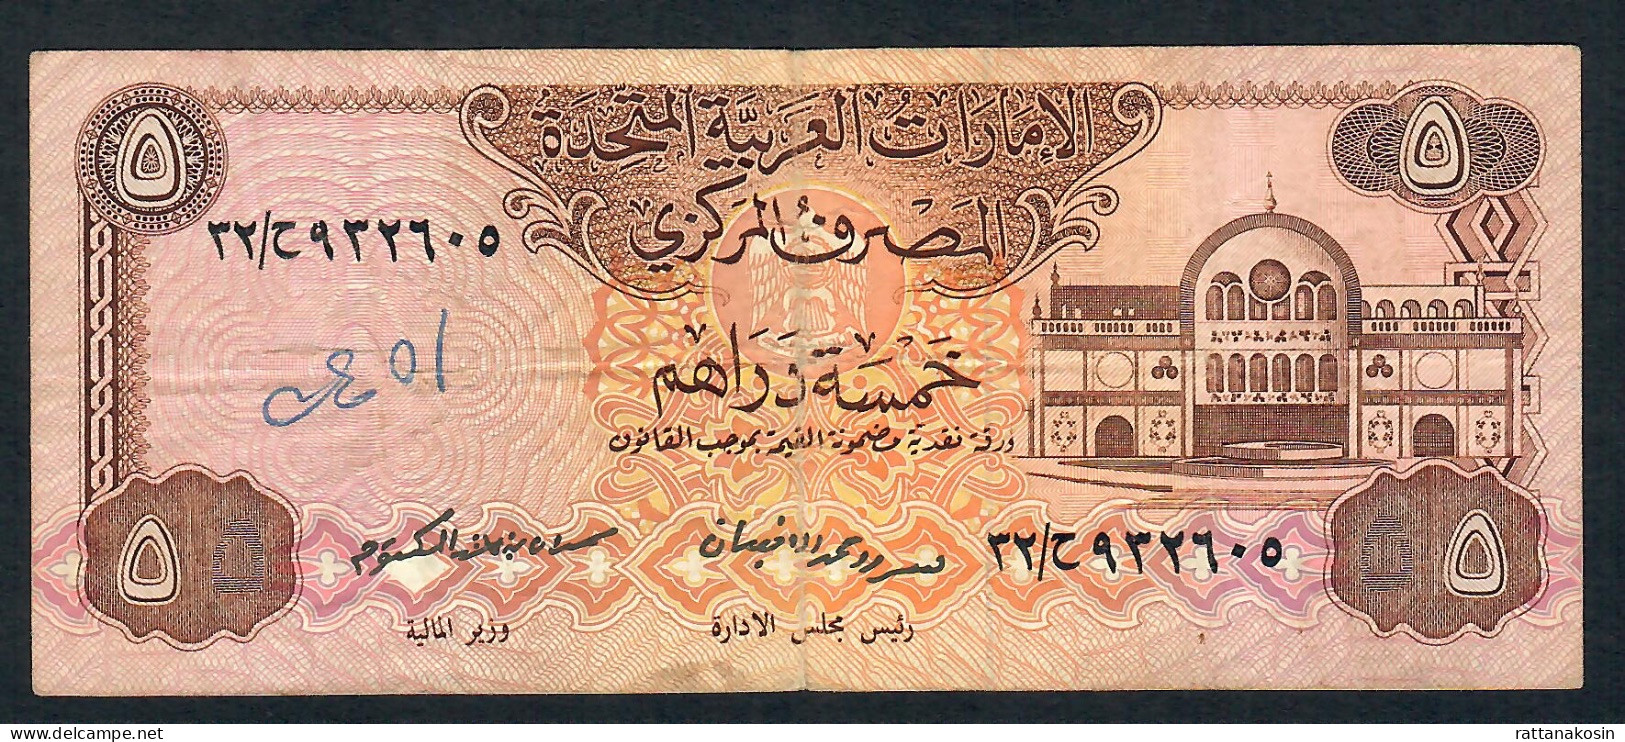 U.A.E.  P7 5 DIRHAMS 1982  Signature 1 FINE - Ver. Arab. Emirate